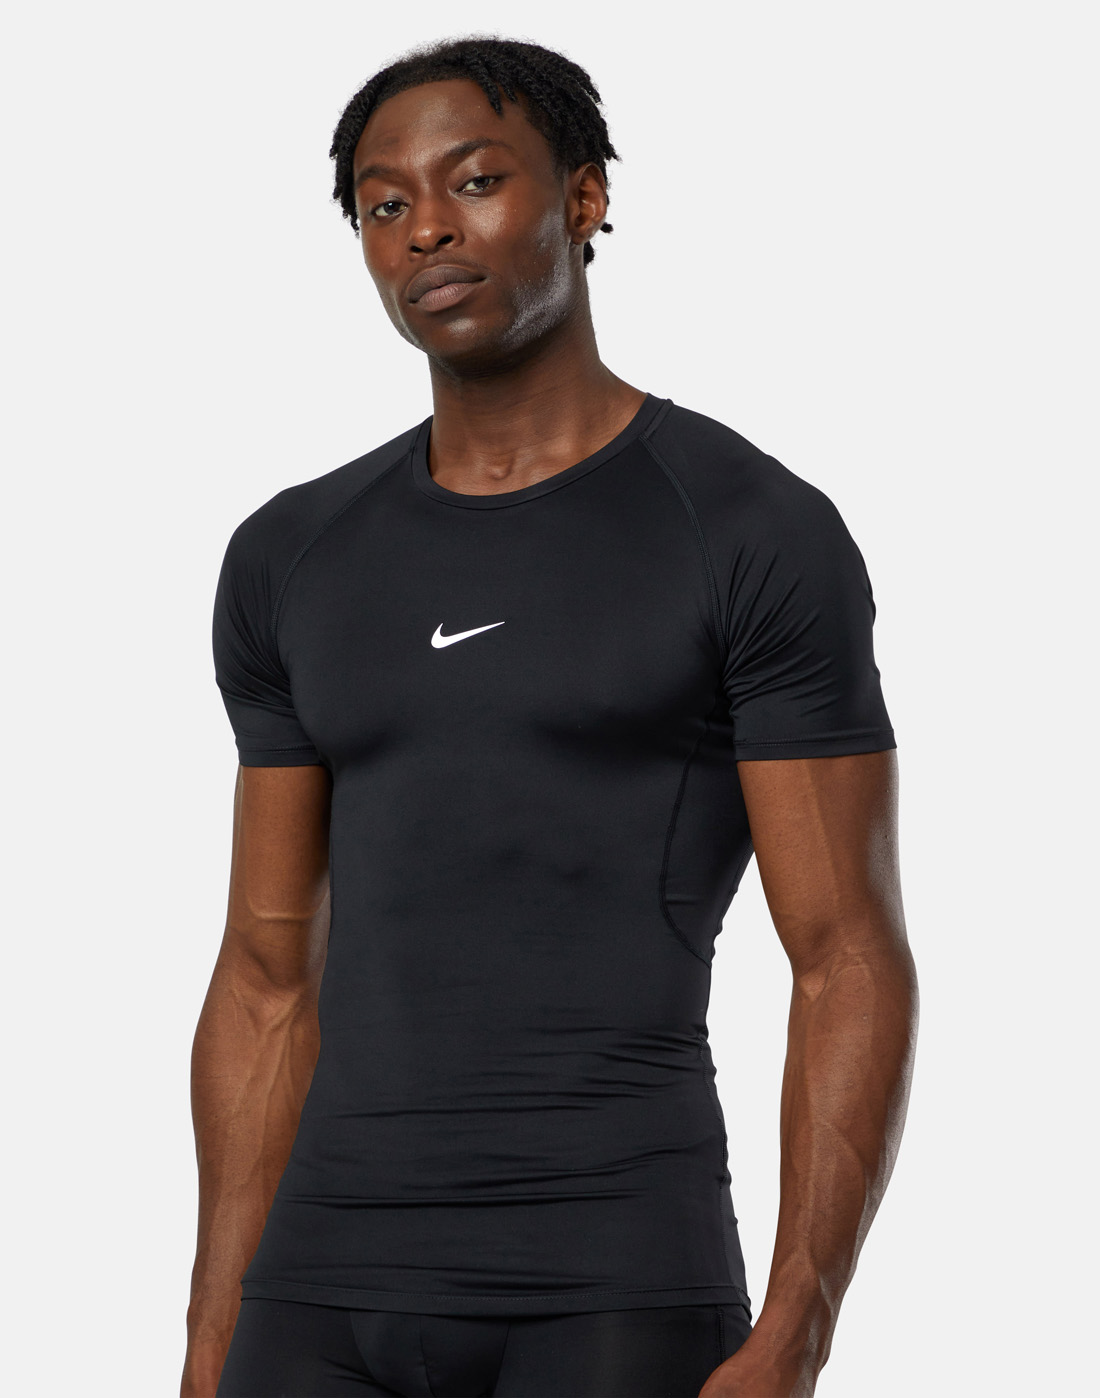 Nike Mens Pro Base Training T-Shirt - Black | Life Style Sports UK